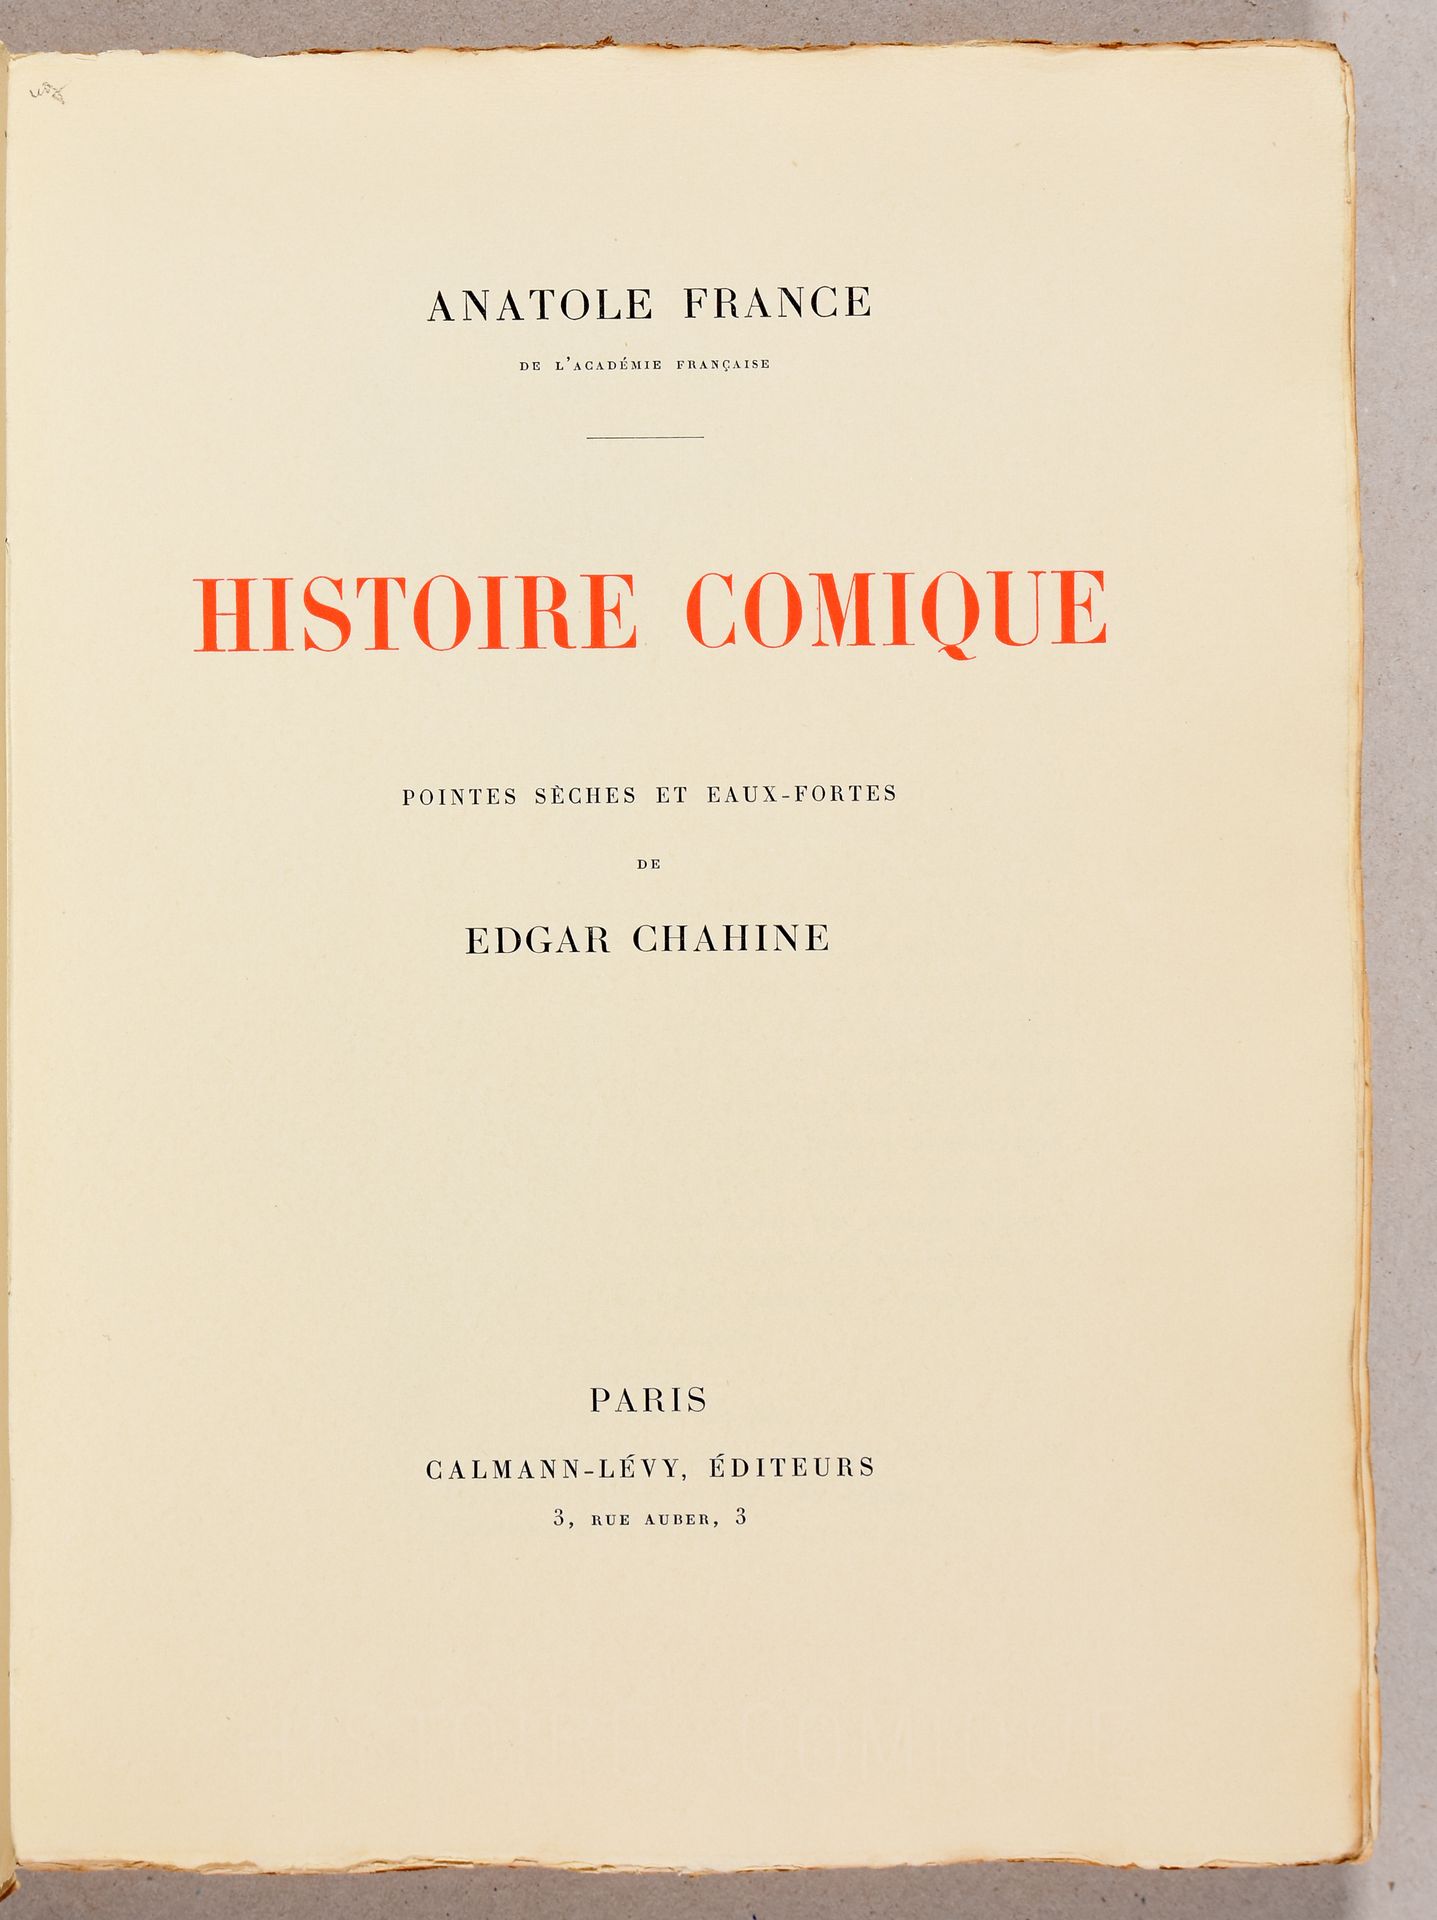 Chahine, Edgar FRANCE, Anatole Histoire comique. Pointes sèches et eaux-fortes d&hellip;